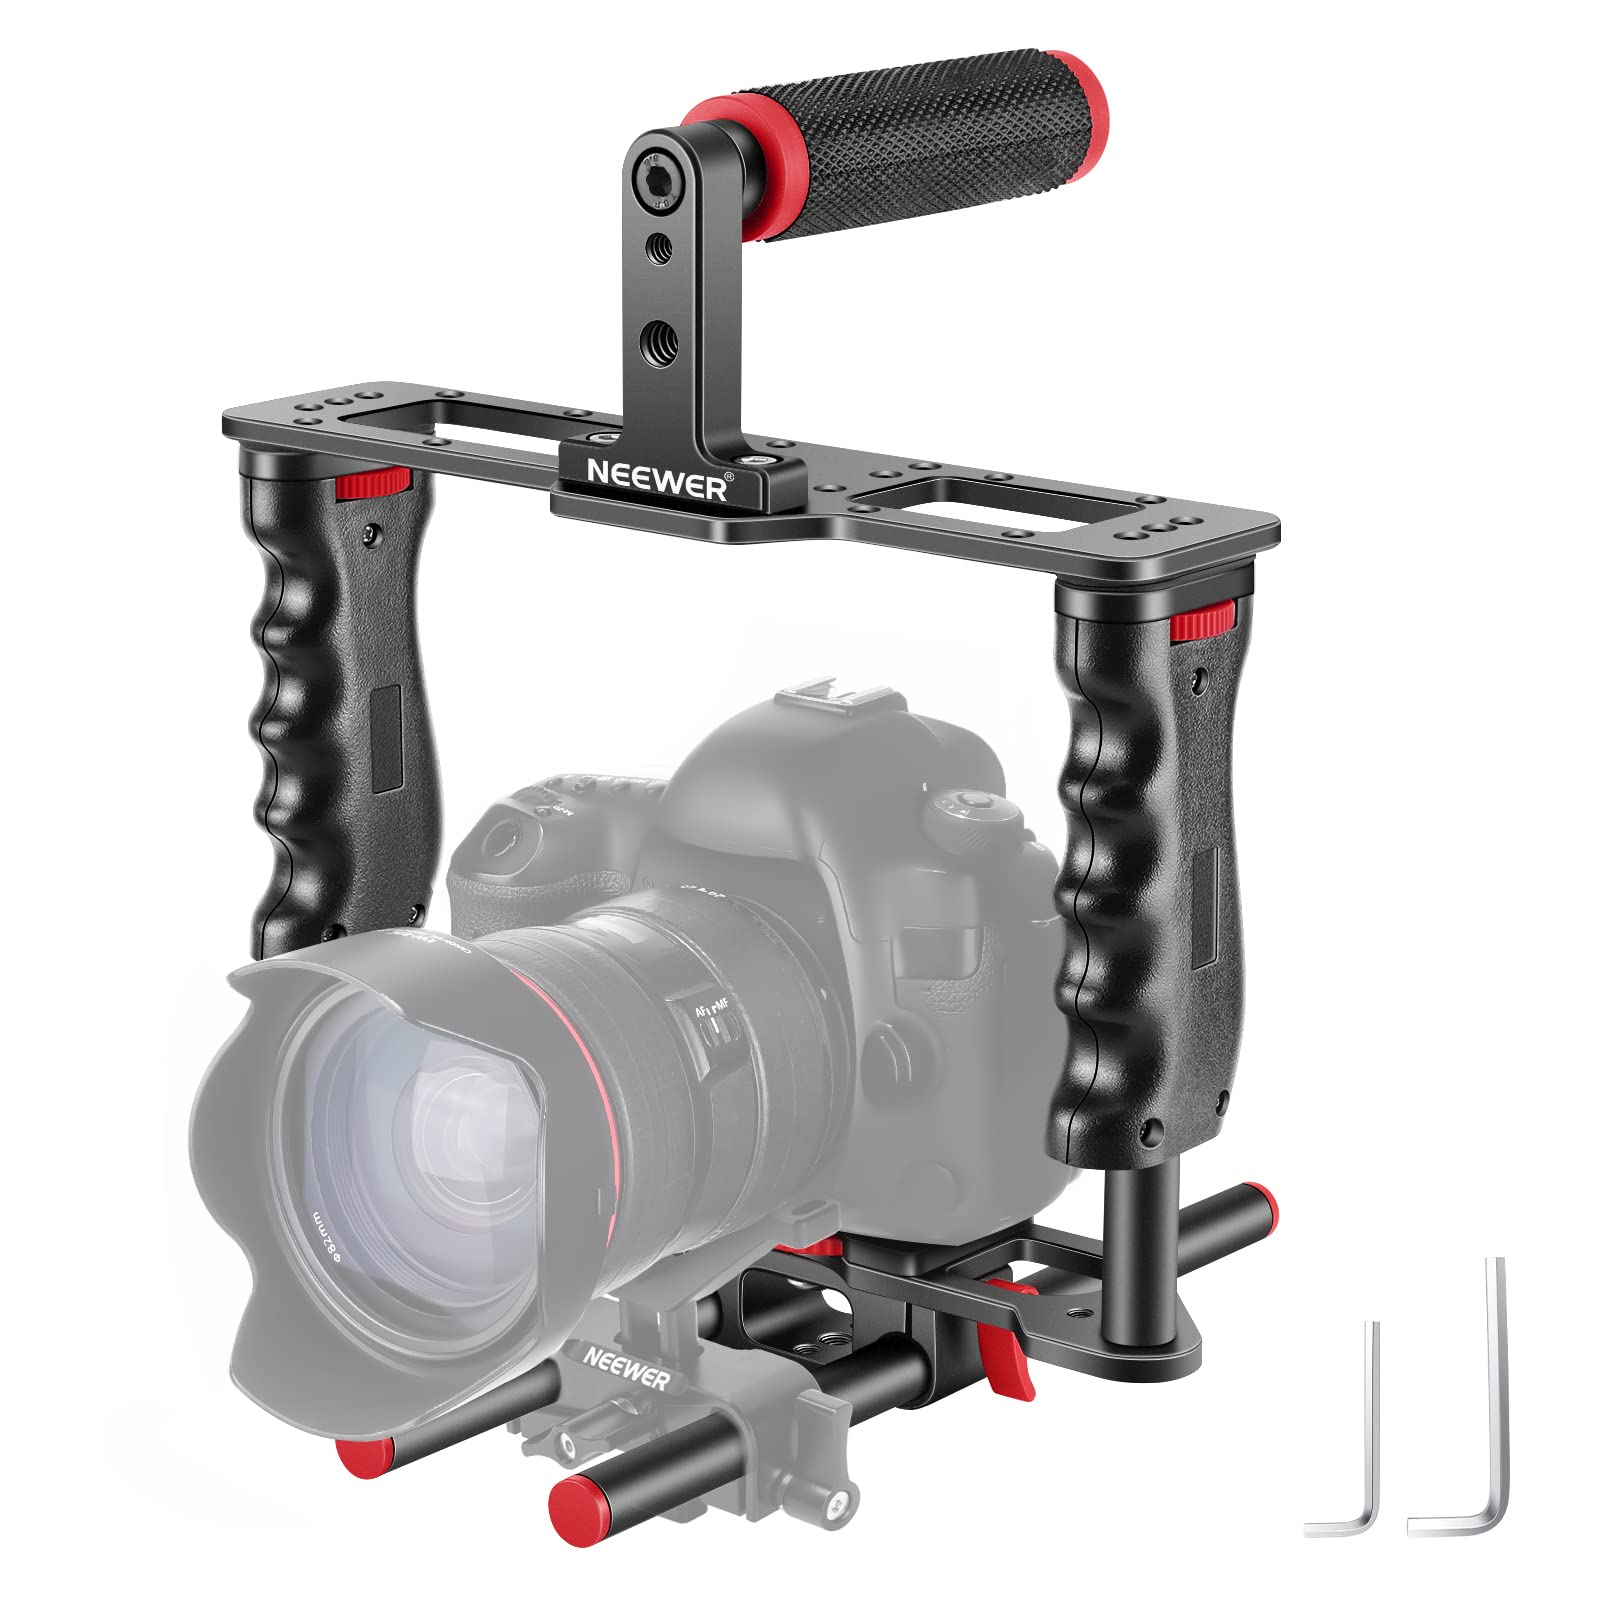 NEEWER Kamera Videokäfig aus Aluminiumlegierung, mit oberem Griff, Zwei Handgriffen, Zwei 15mm Stangen, kompatibel mit Canon Sony Fujifilm Nikon DSLR Camera und Camcorder (Schwarz + Rot)